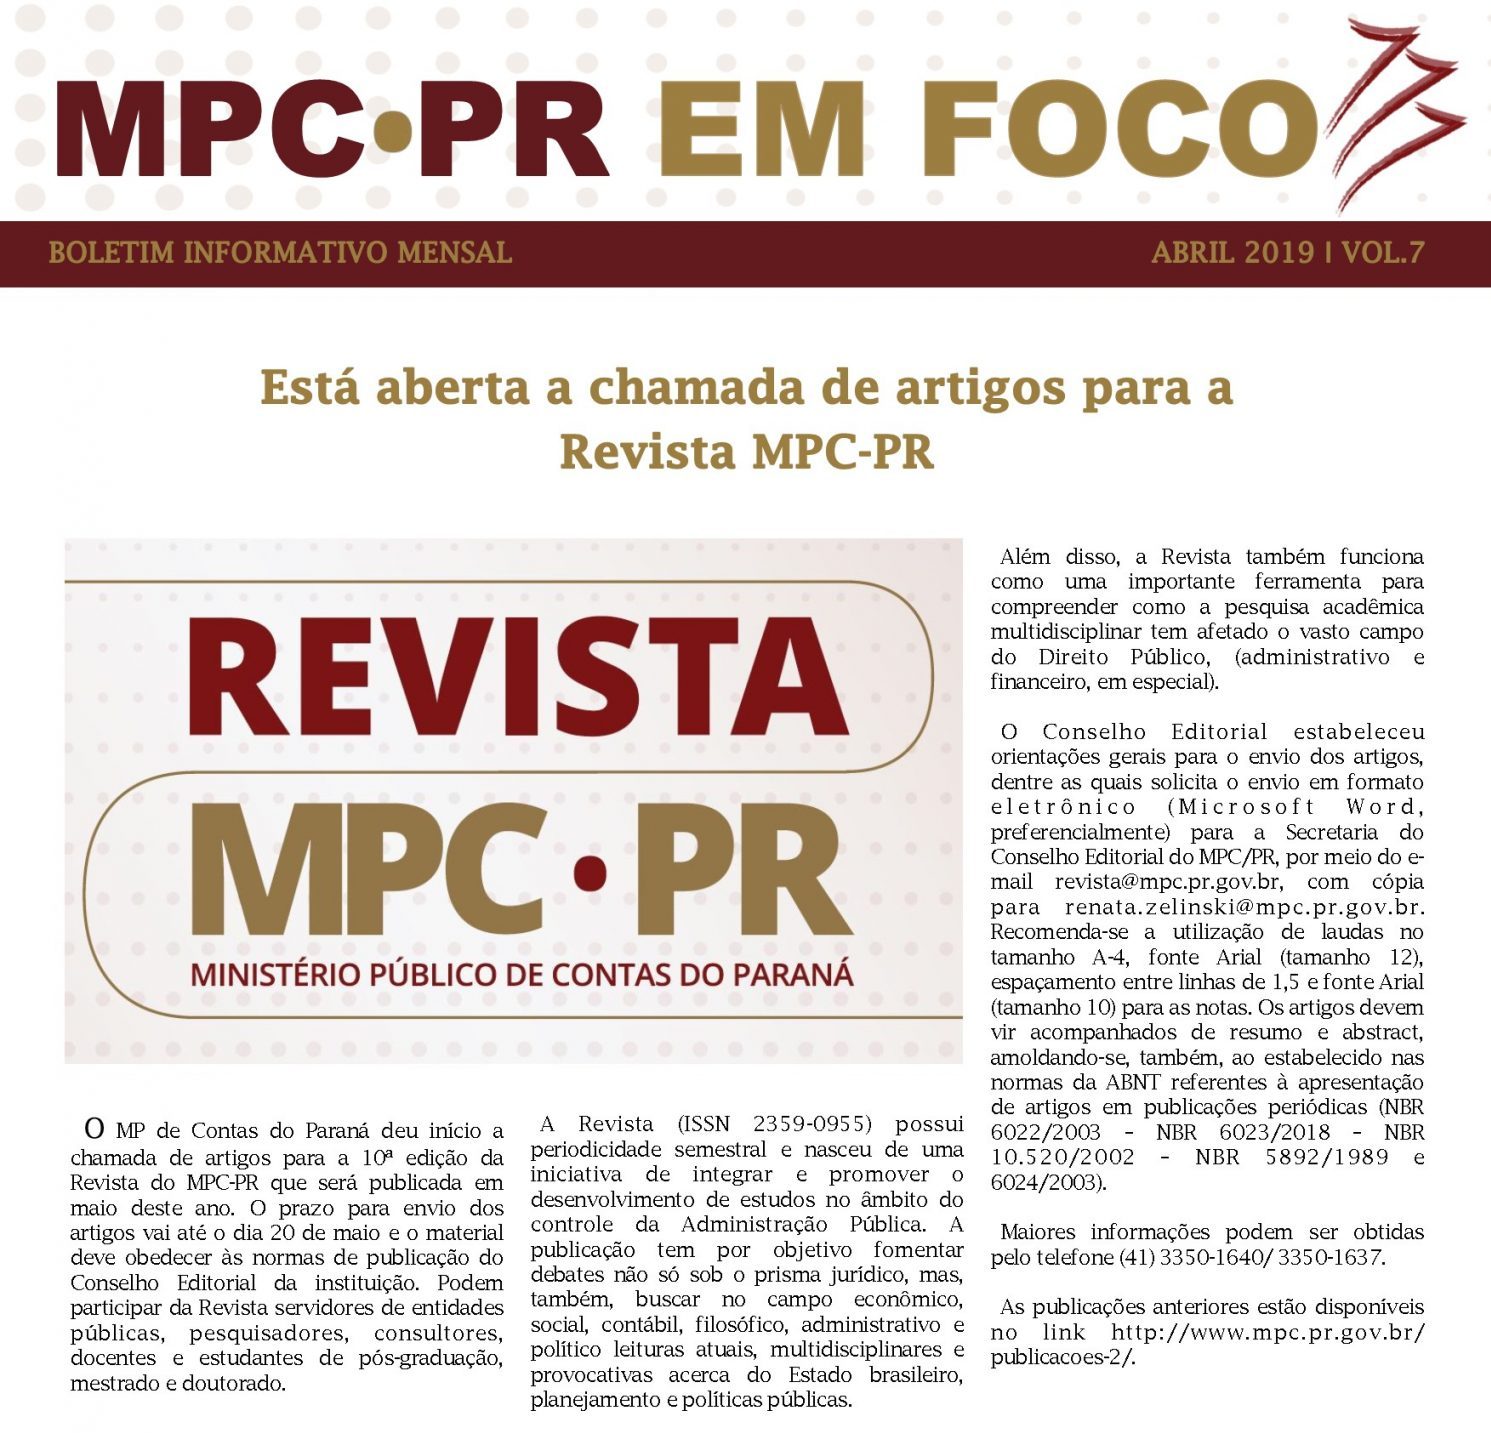 Leia mais sobre o artigo Boletim Informativo MPC-PR em Foco abril/2019